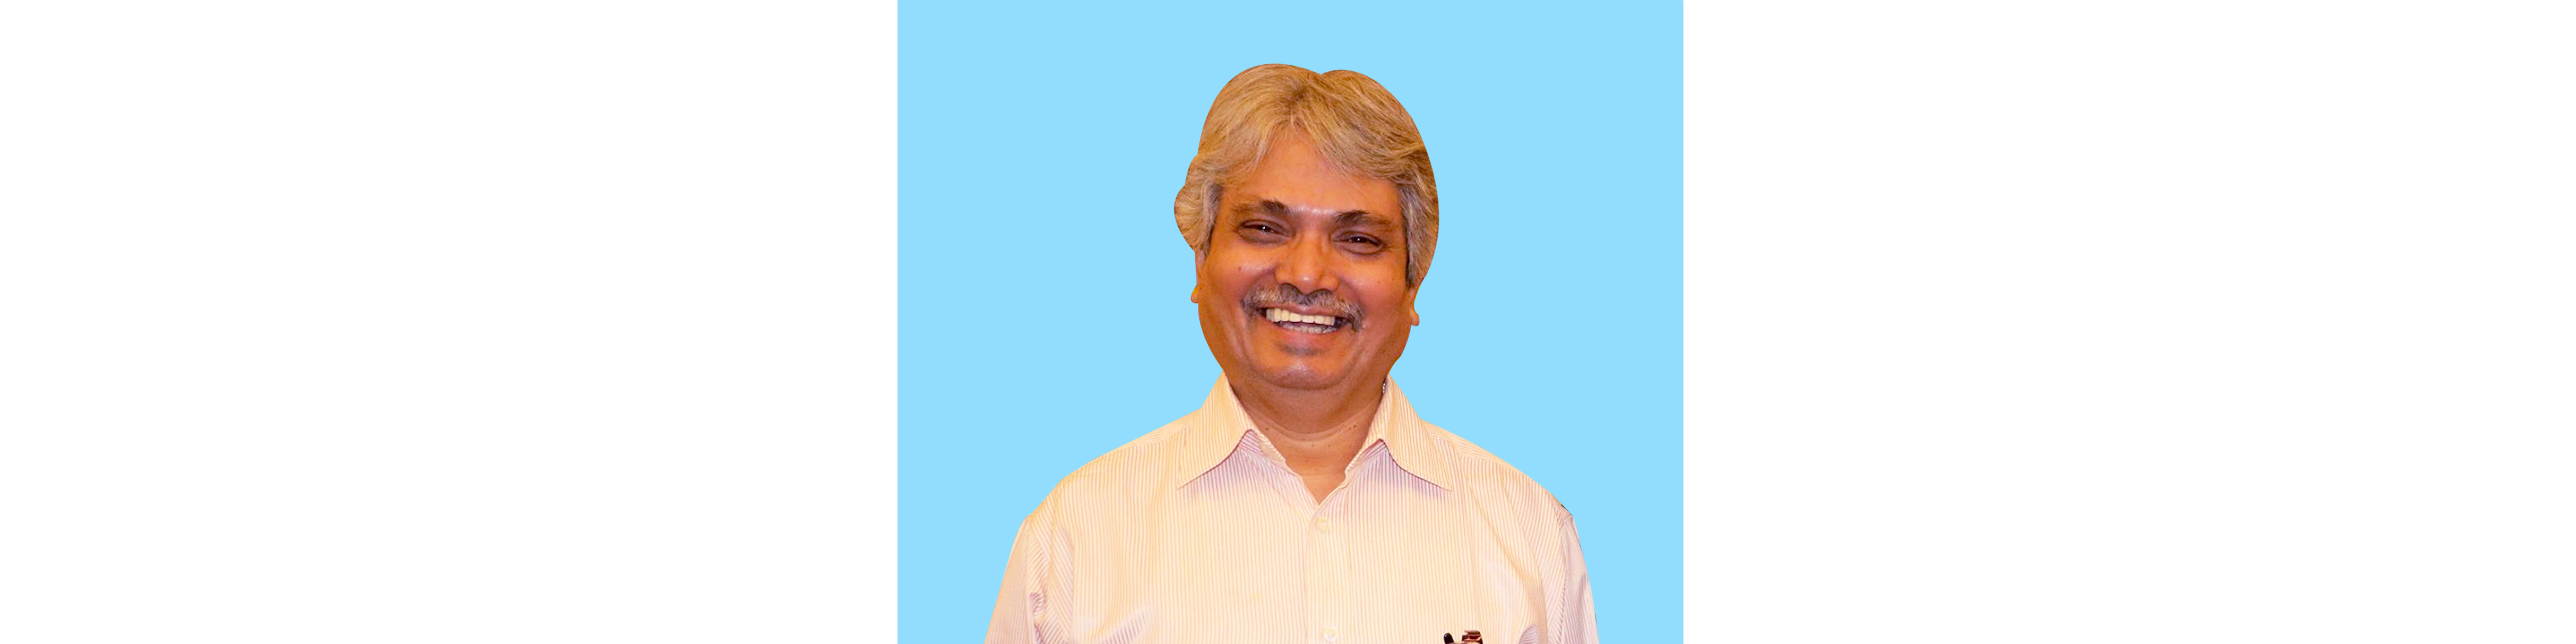 Nitish C Debnath member of the Steering Committee